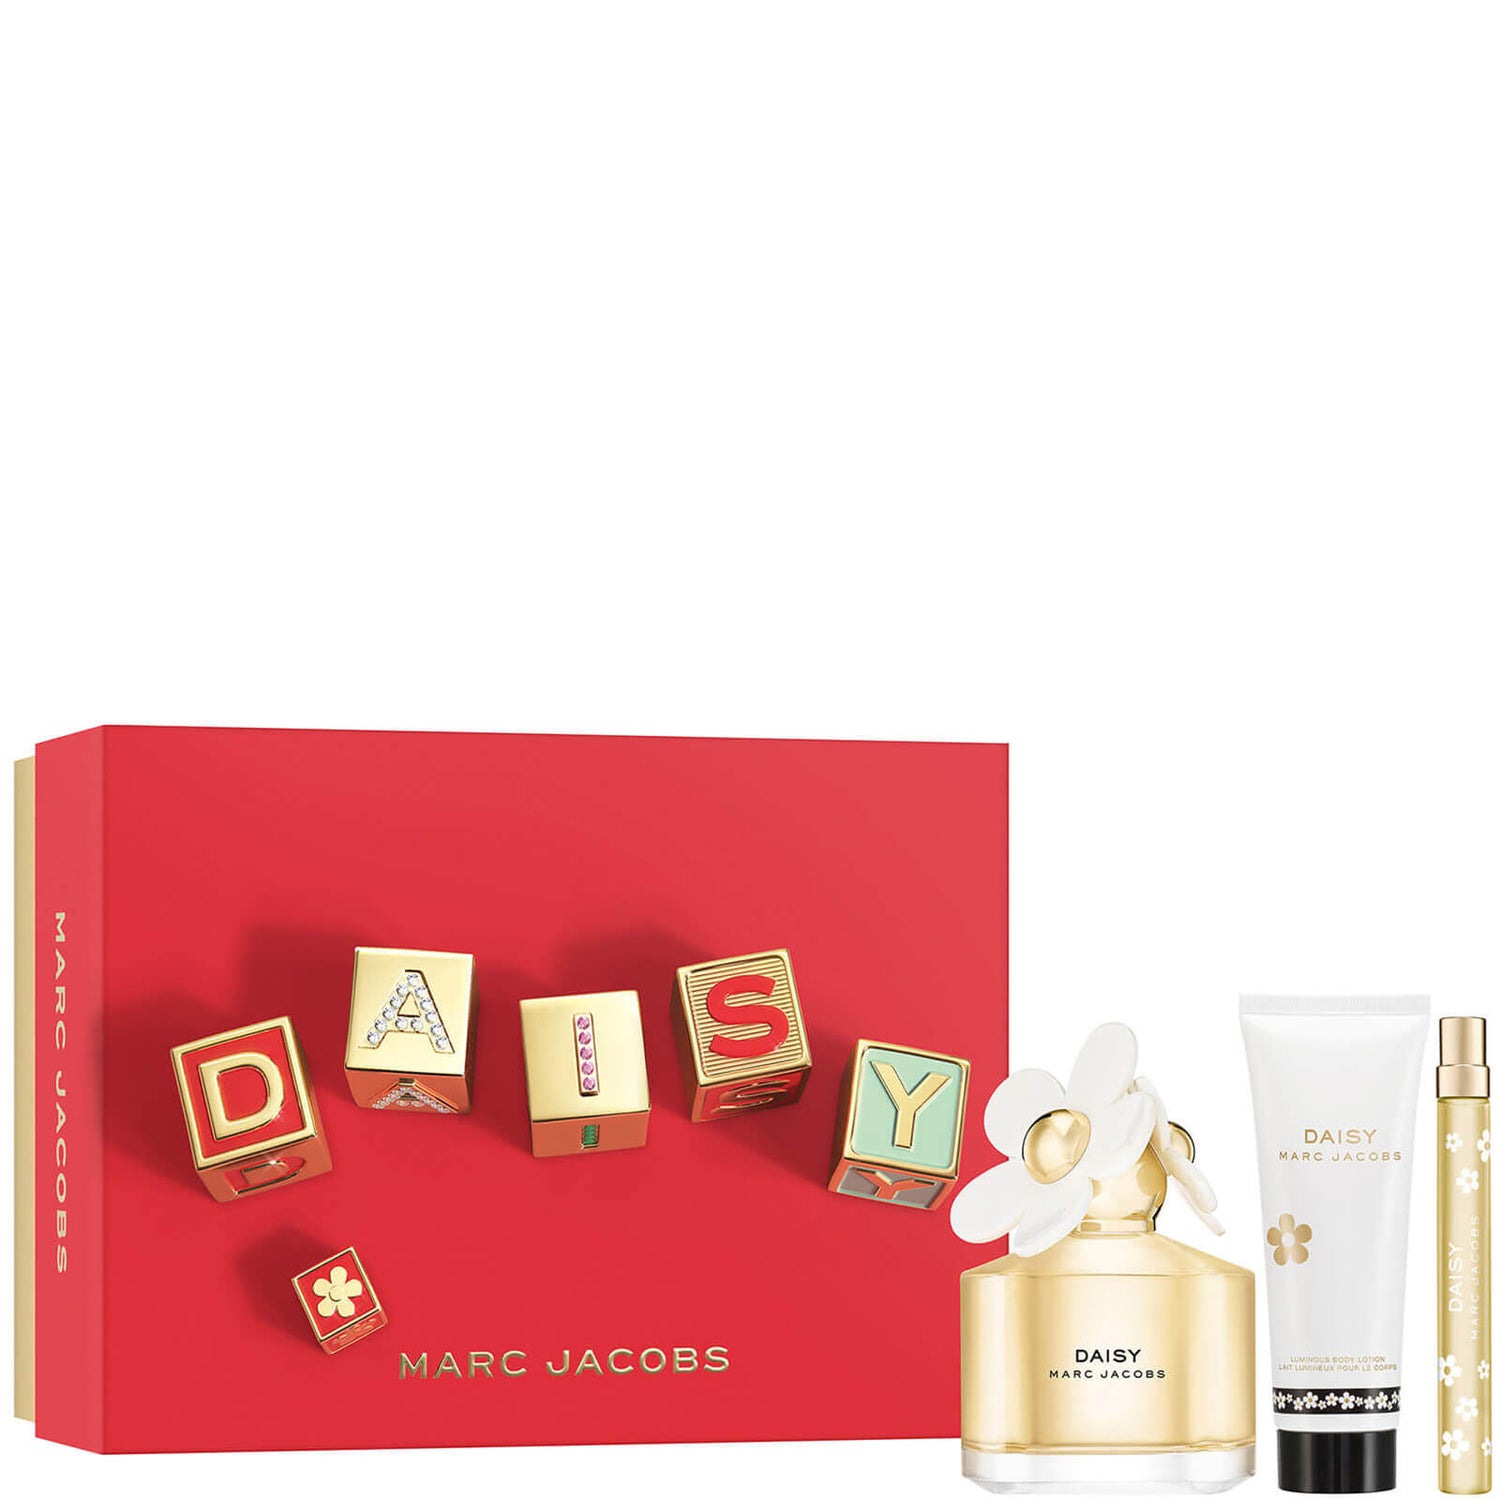 Marc Jacobs Daisy Eau de Toilette 100ml Gift Set (Worth £116.00)